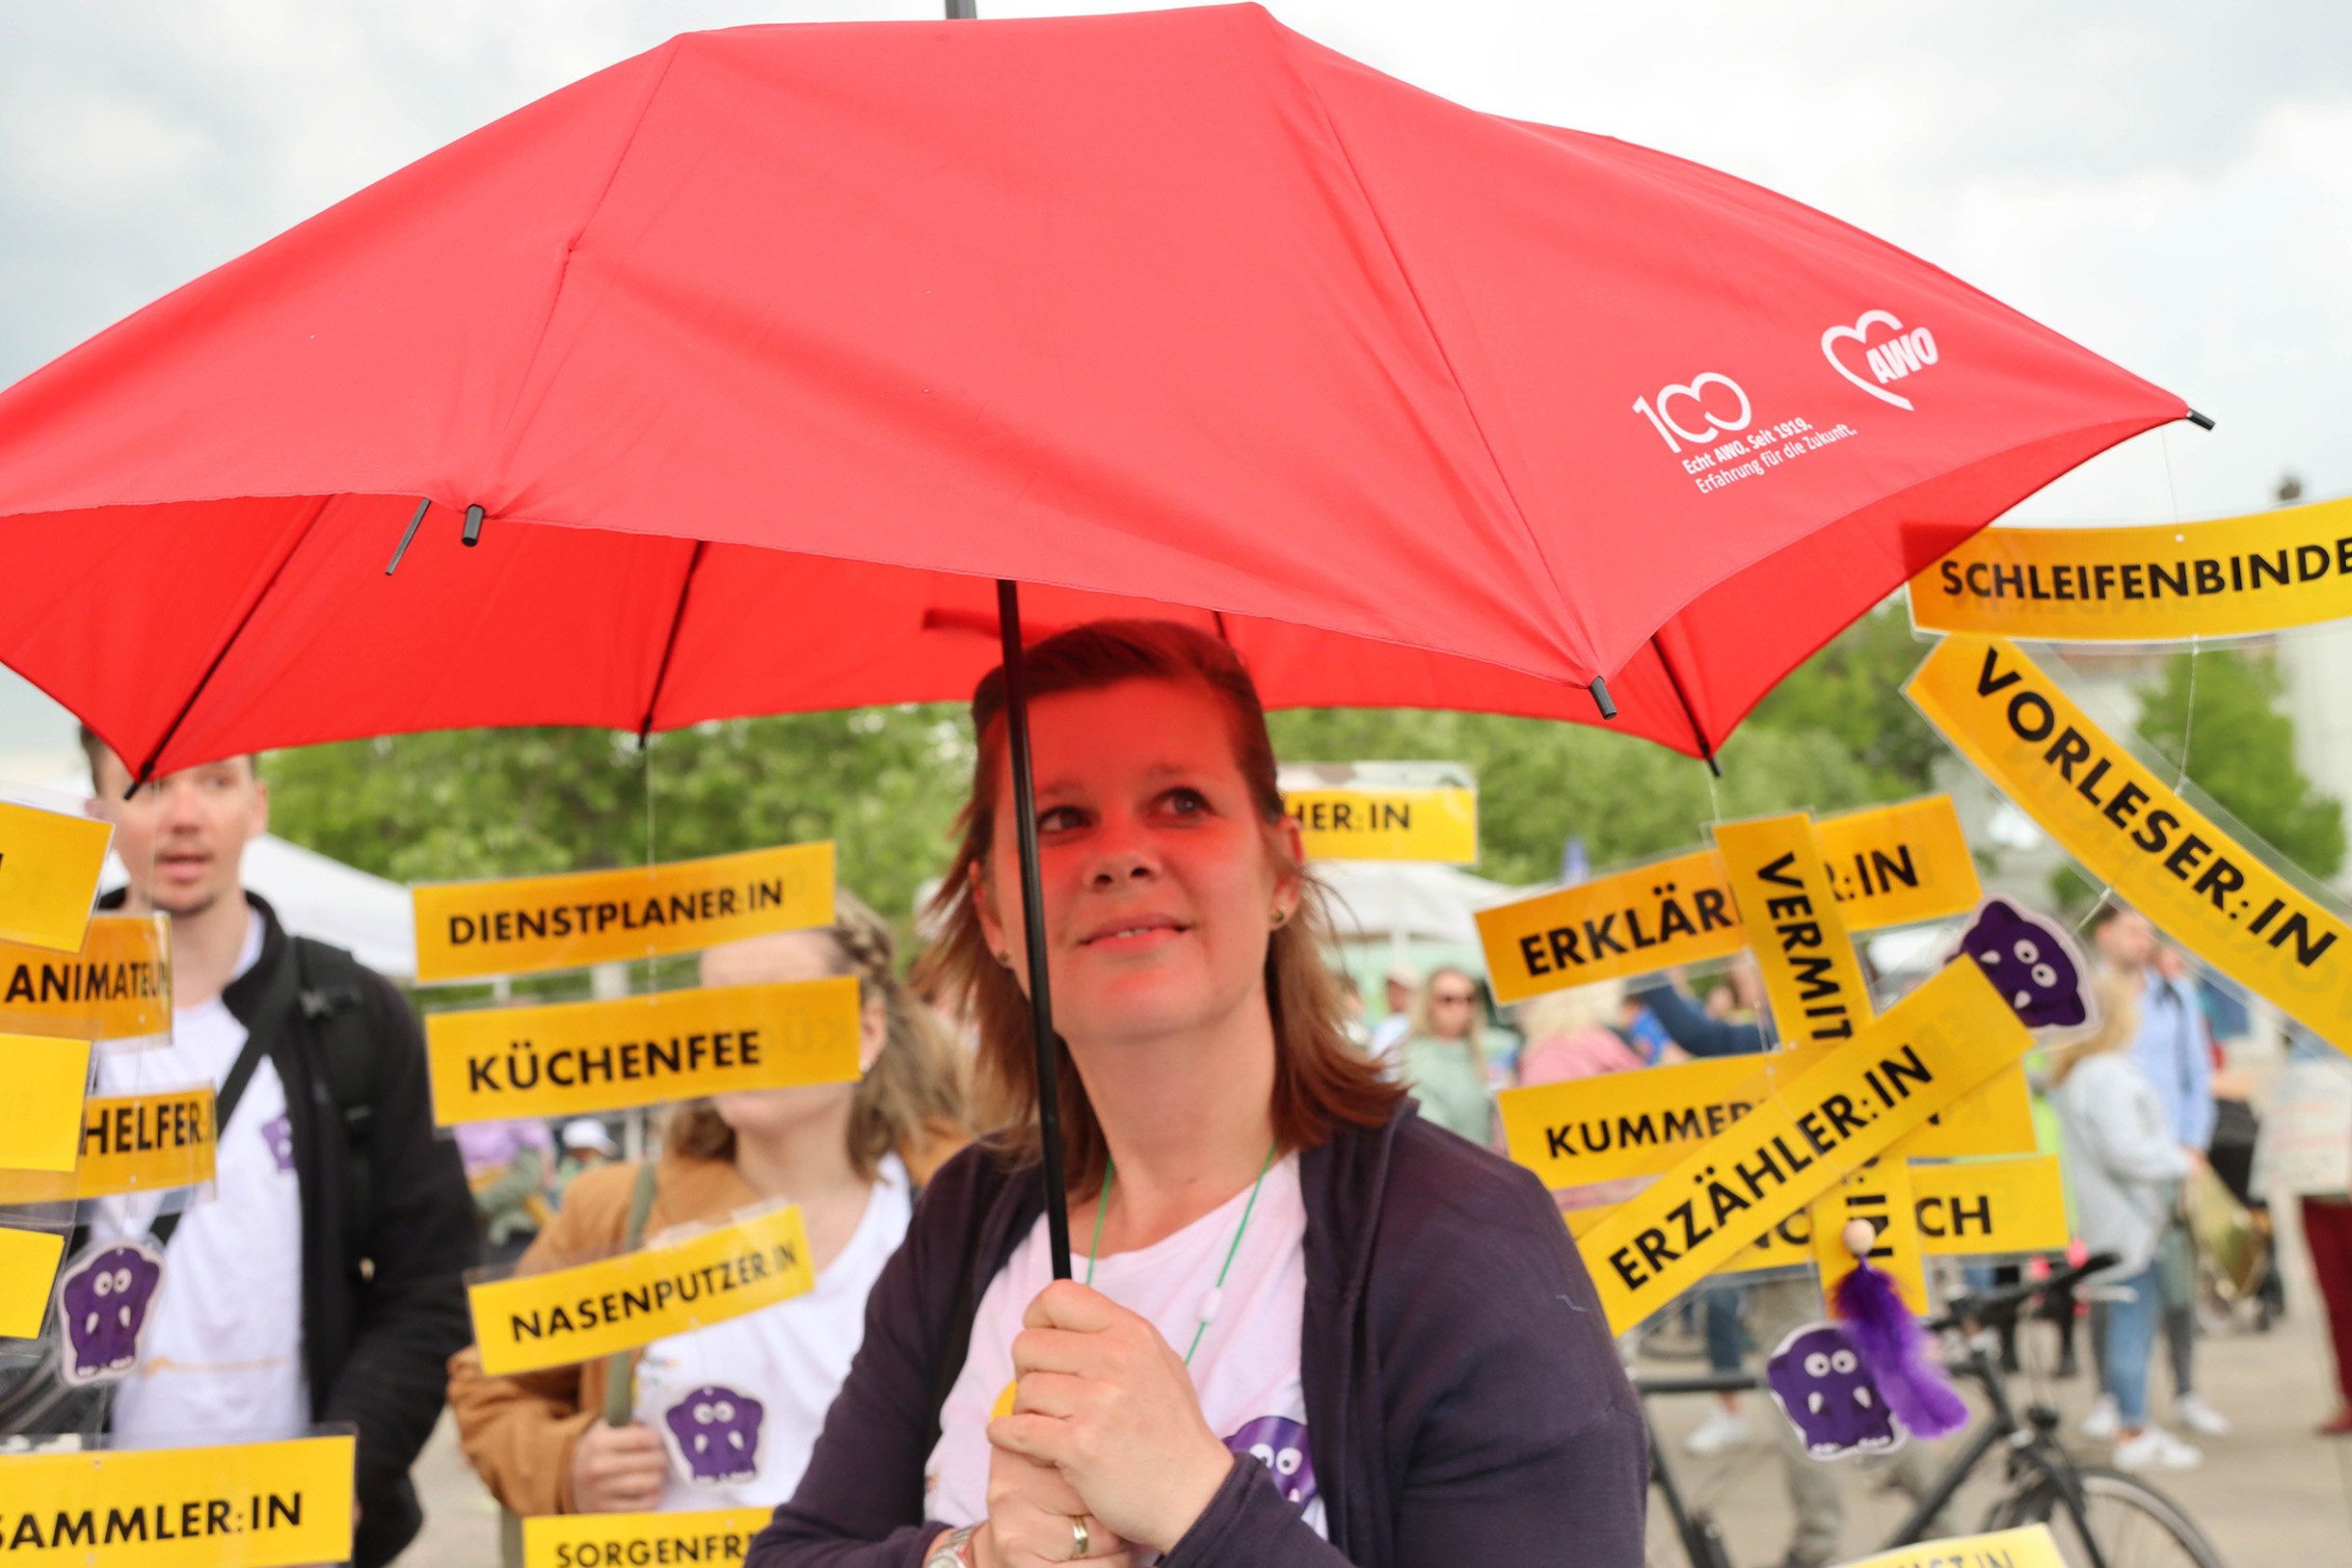 Frau mit großem roten AWO-Regenschirm. Im Hintergrund Menschen mit gelben Schildern. Text auf verschiedenen Schilder: Vorleser, Schleifenbinder, Erzähler Dienstplaner, Küchenfee